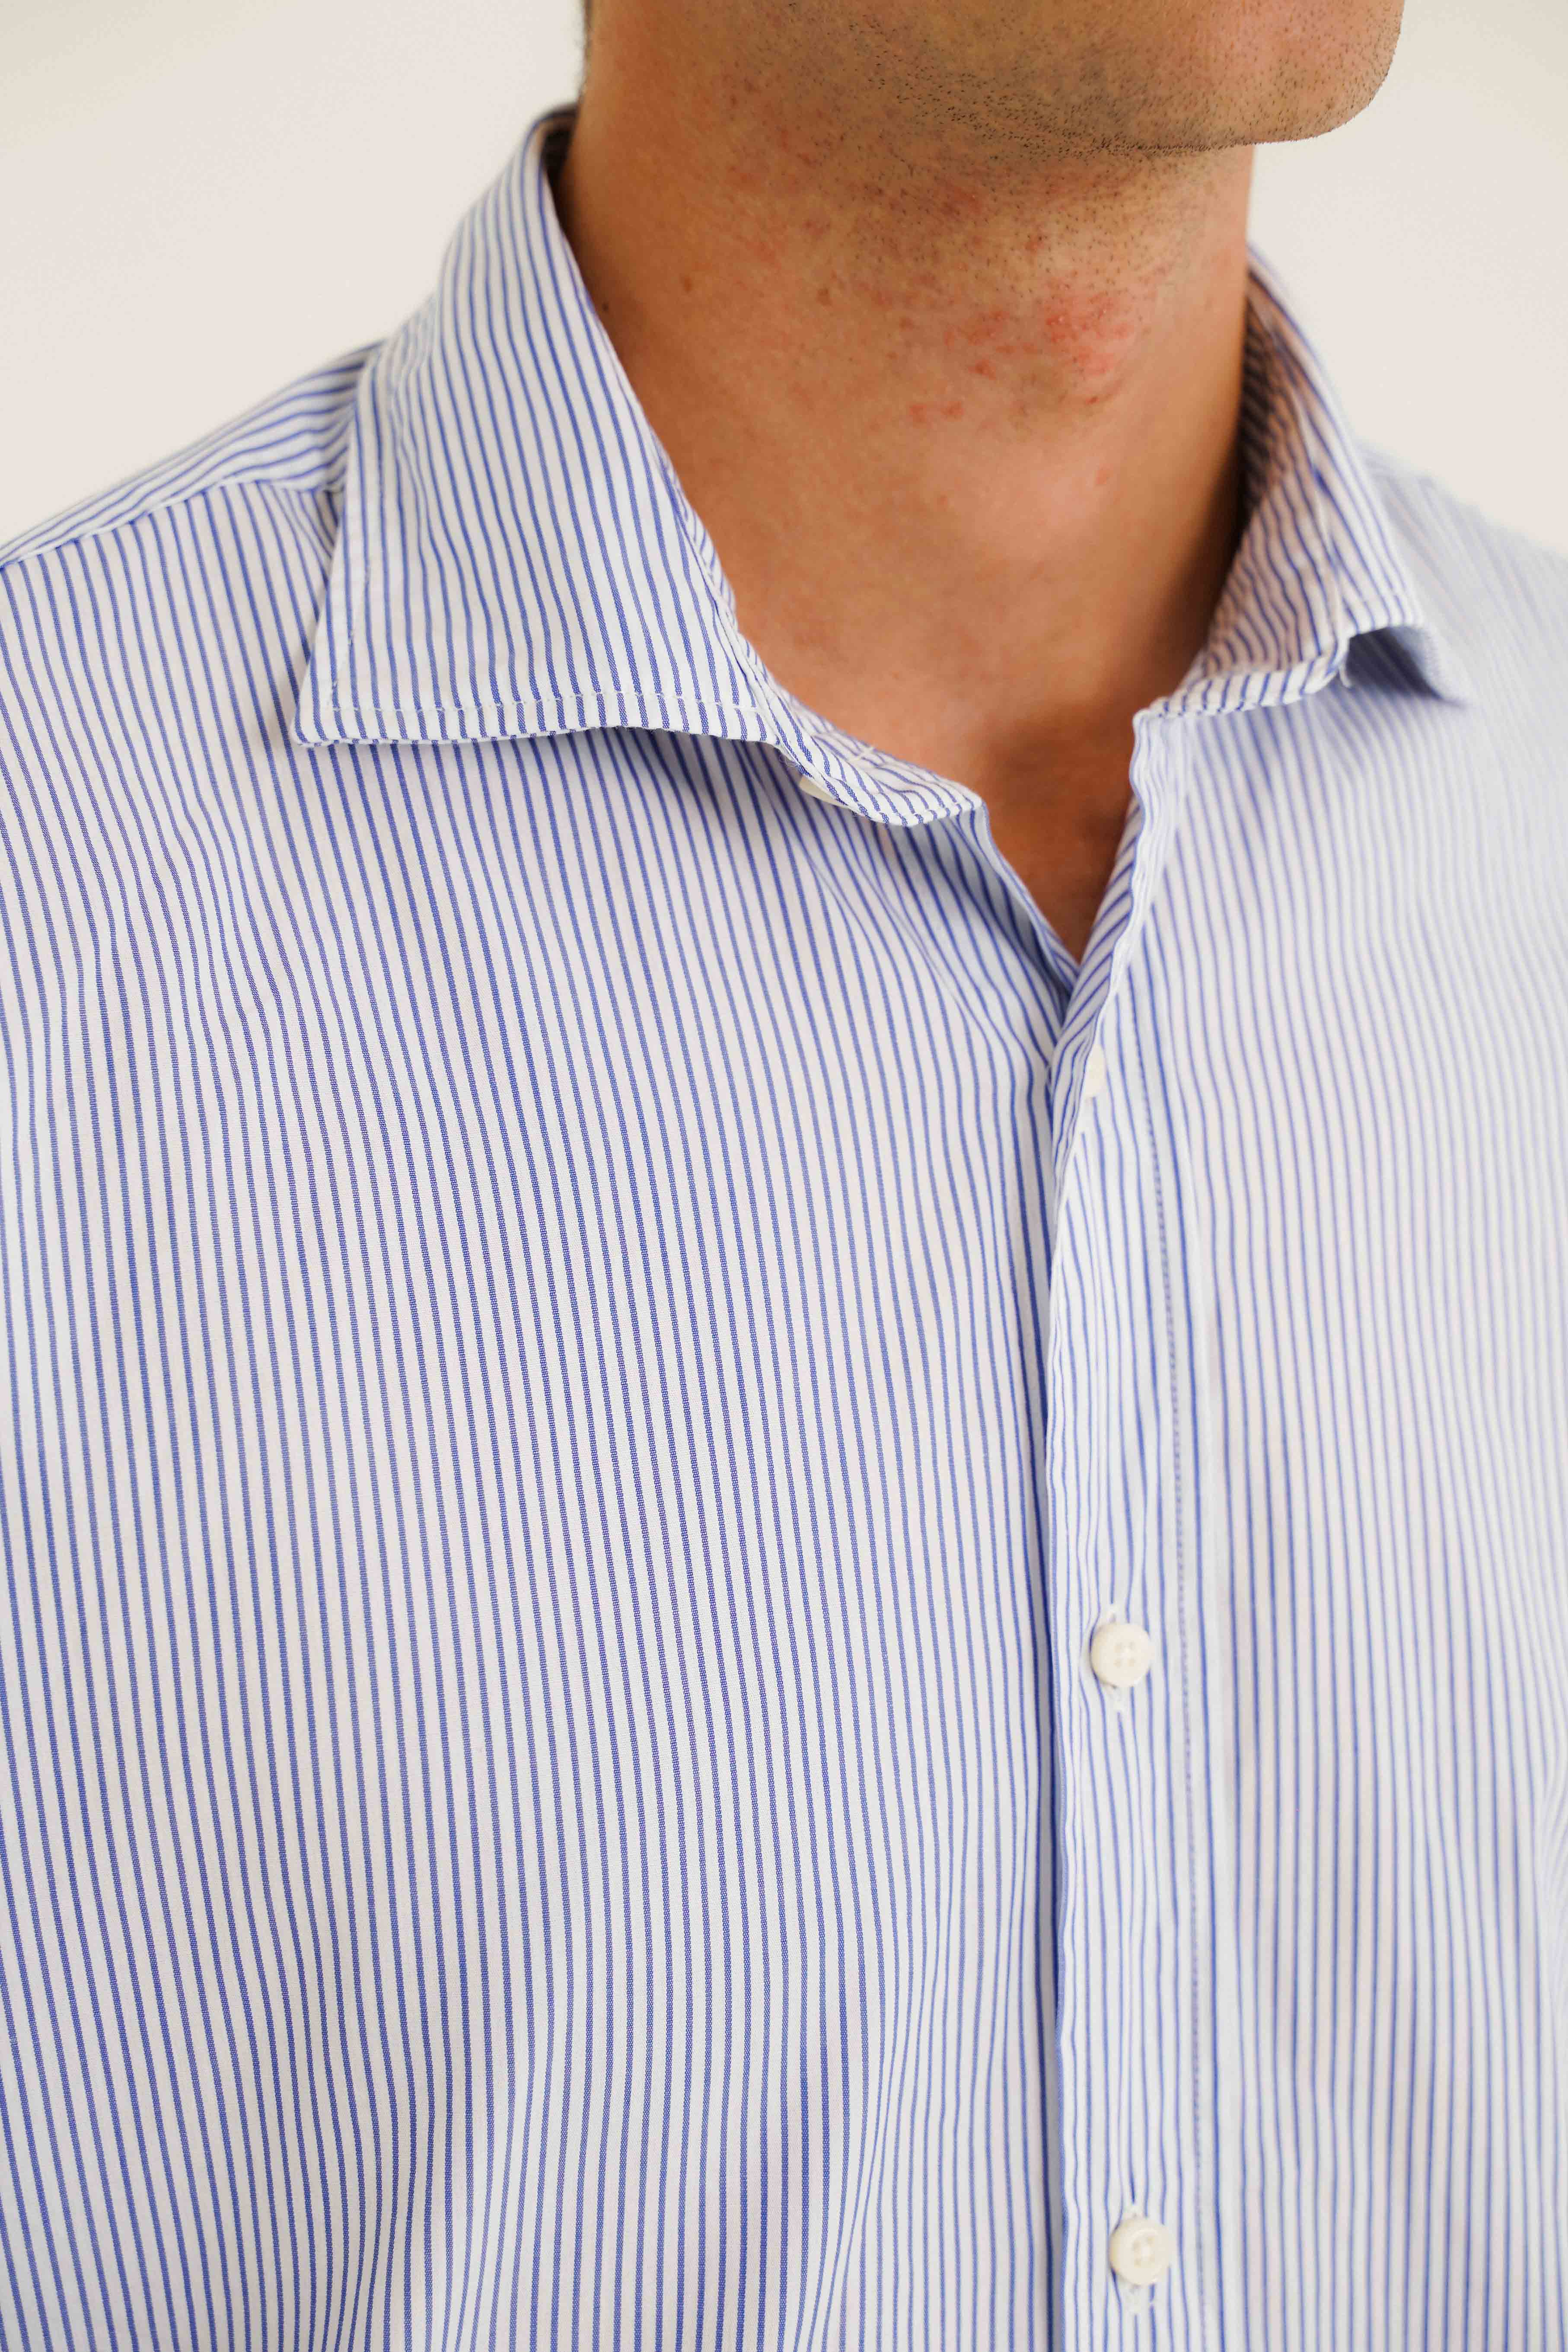 Camisa de Algodón - Rayas Azul y Blanco